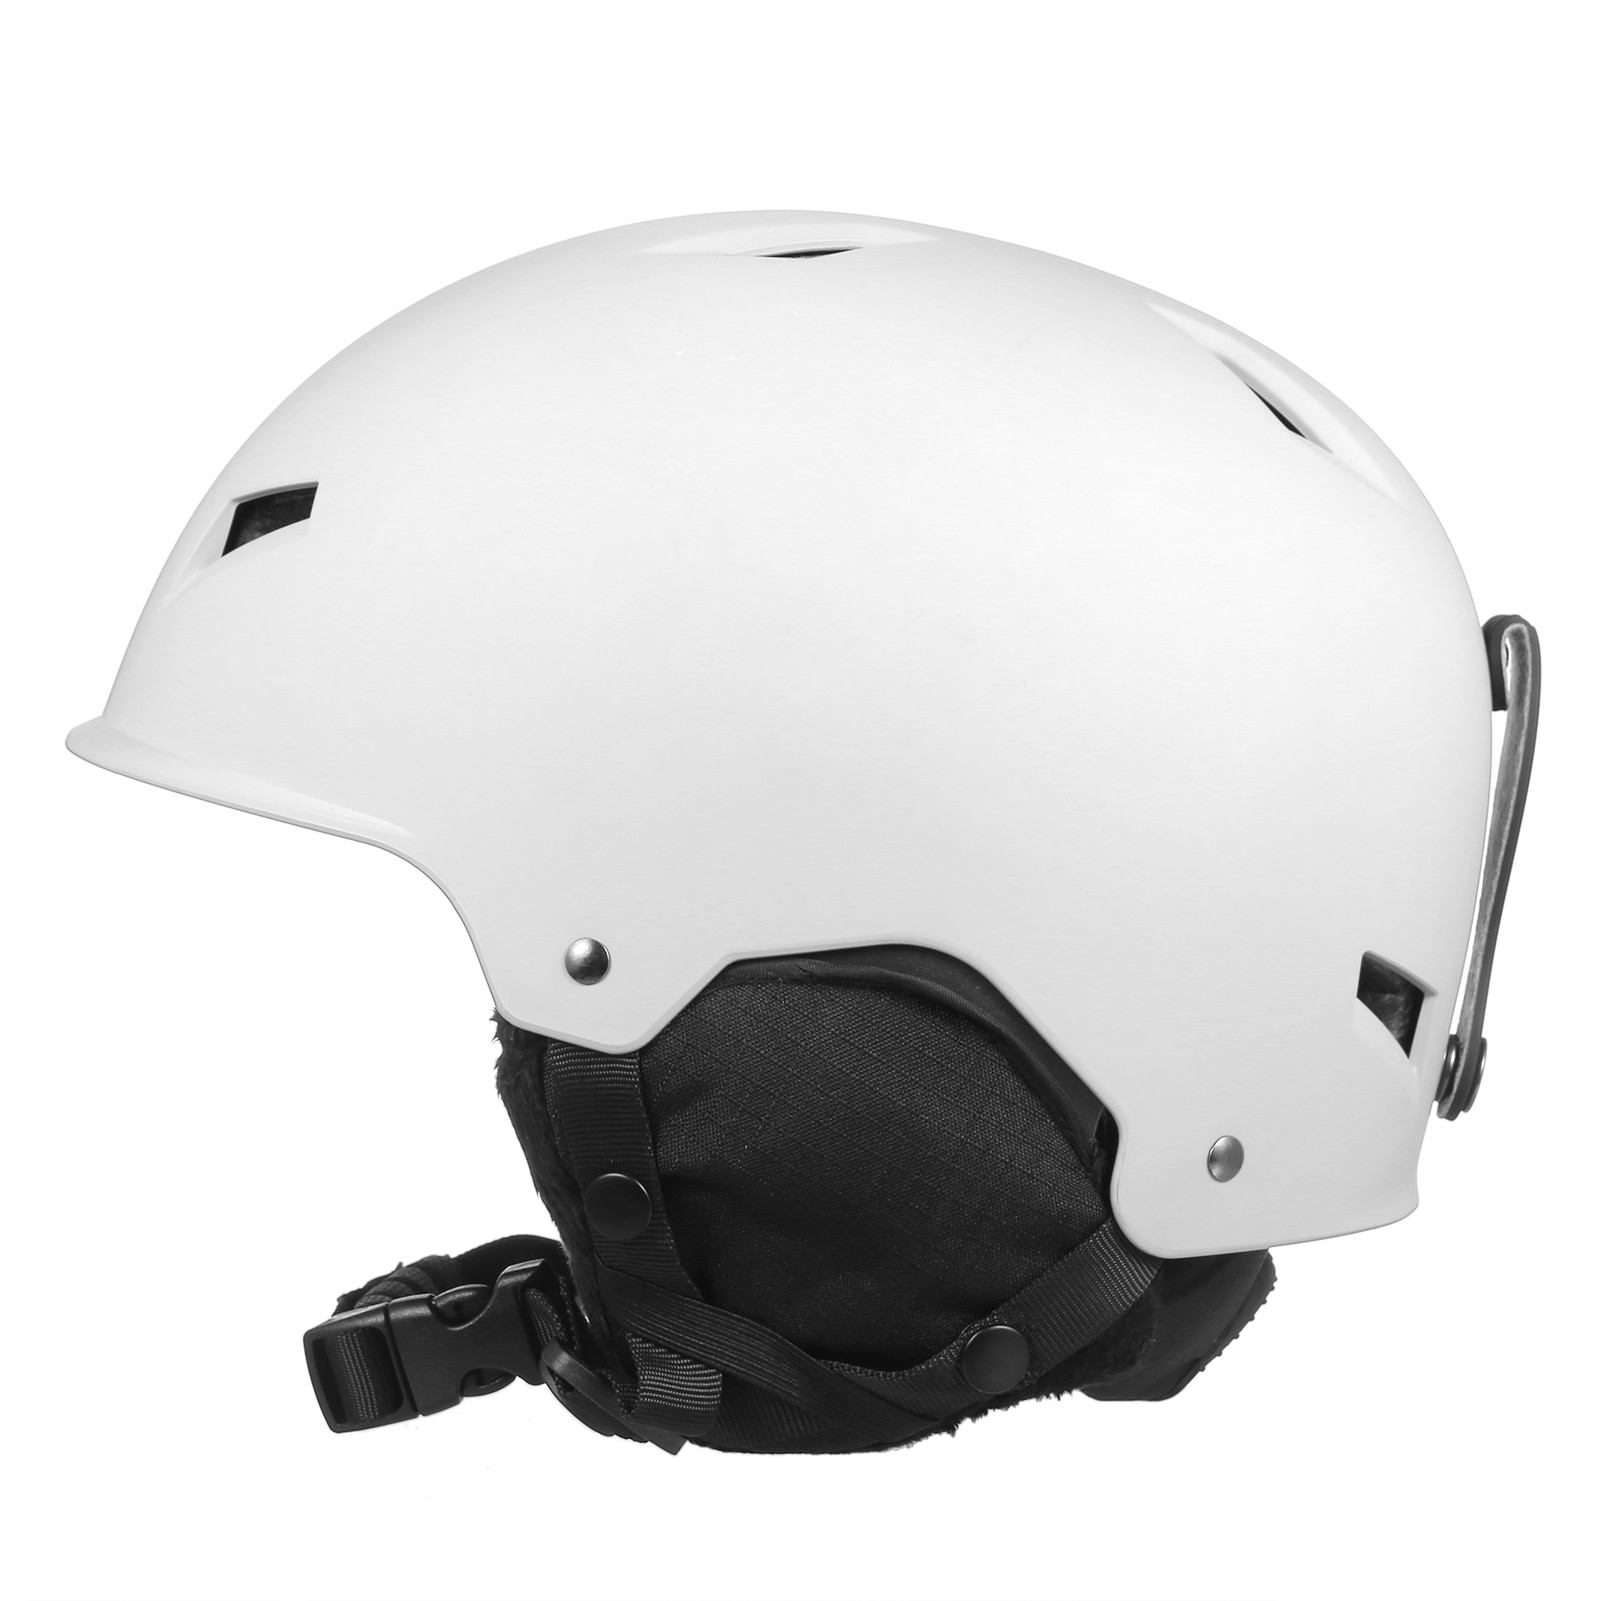 분리형 귀마개가 달린 스노우 보드 헬멧, 스노우 헬멧, 고글 고정 스트랩 안전 스키 헬멧, 남녀 공용, 2021 년 신제품